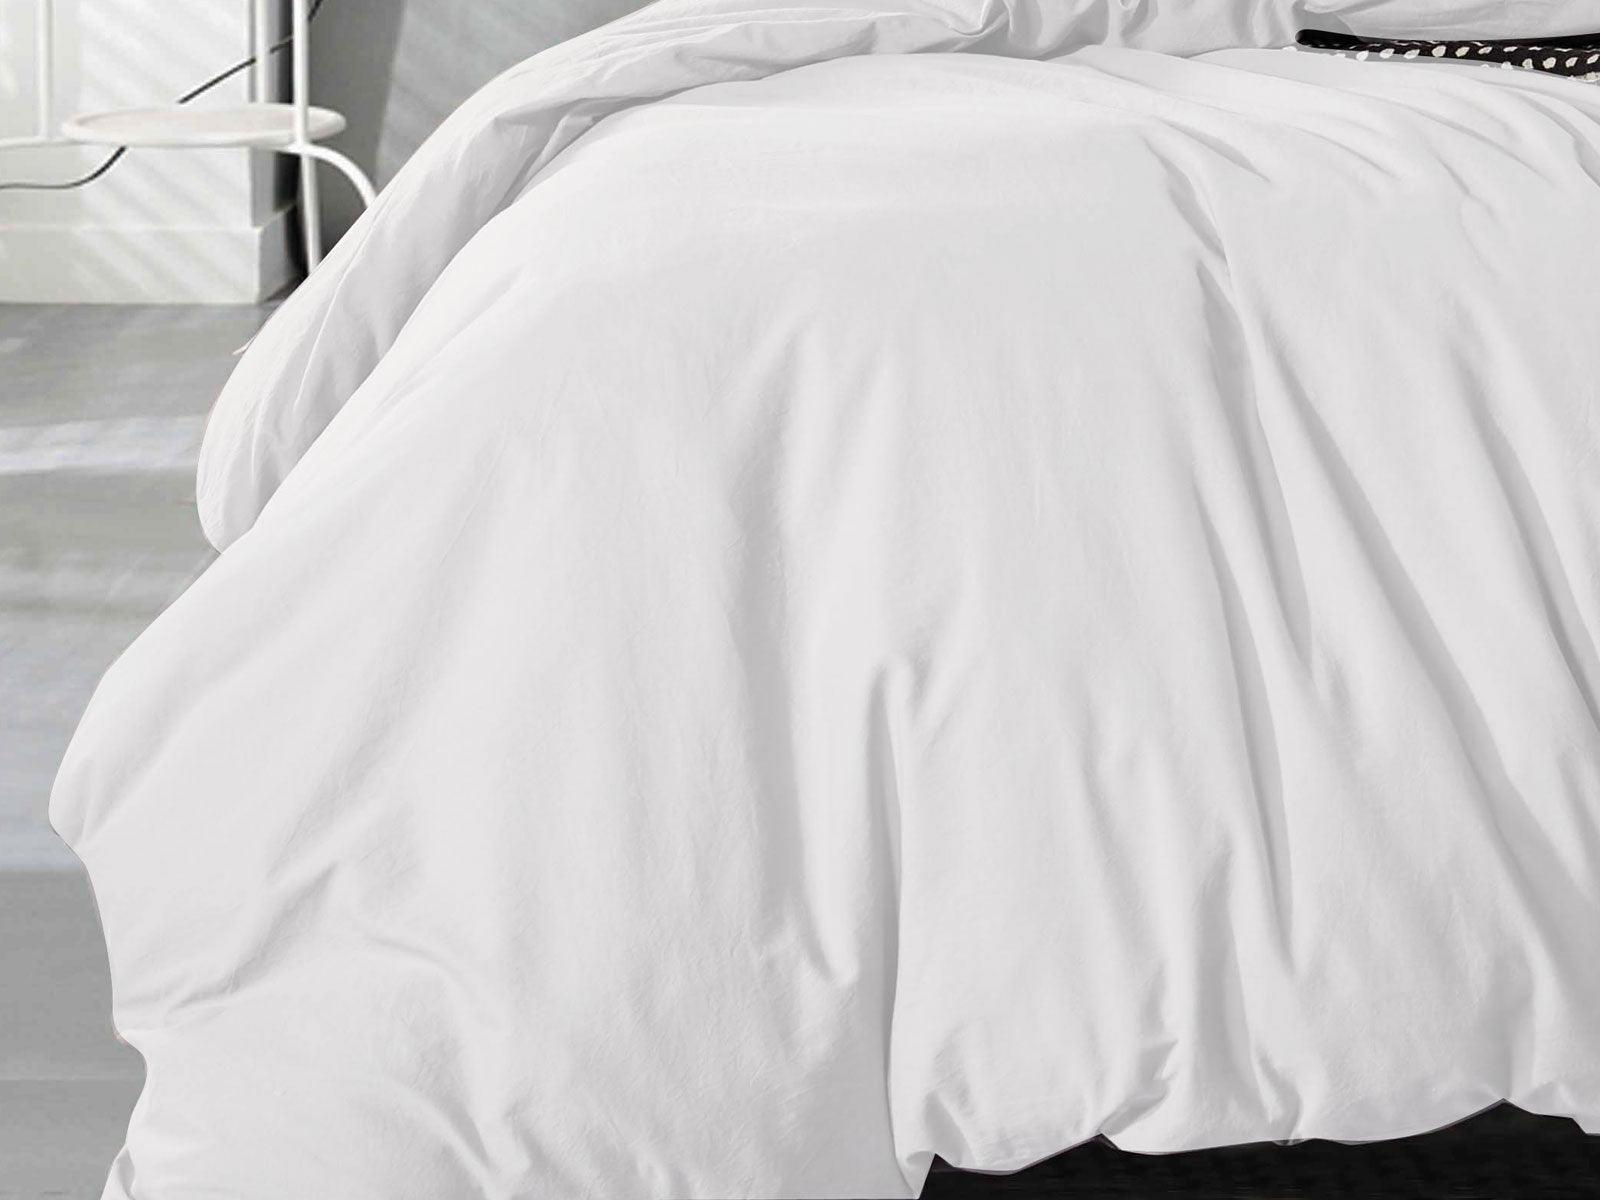 Luxton Super King Size White Vintage Washed Cotton Quilt Cover Set(3PCS)